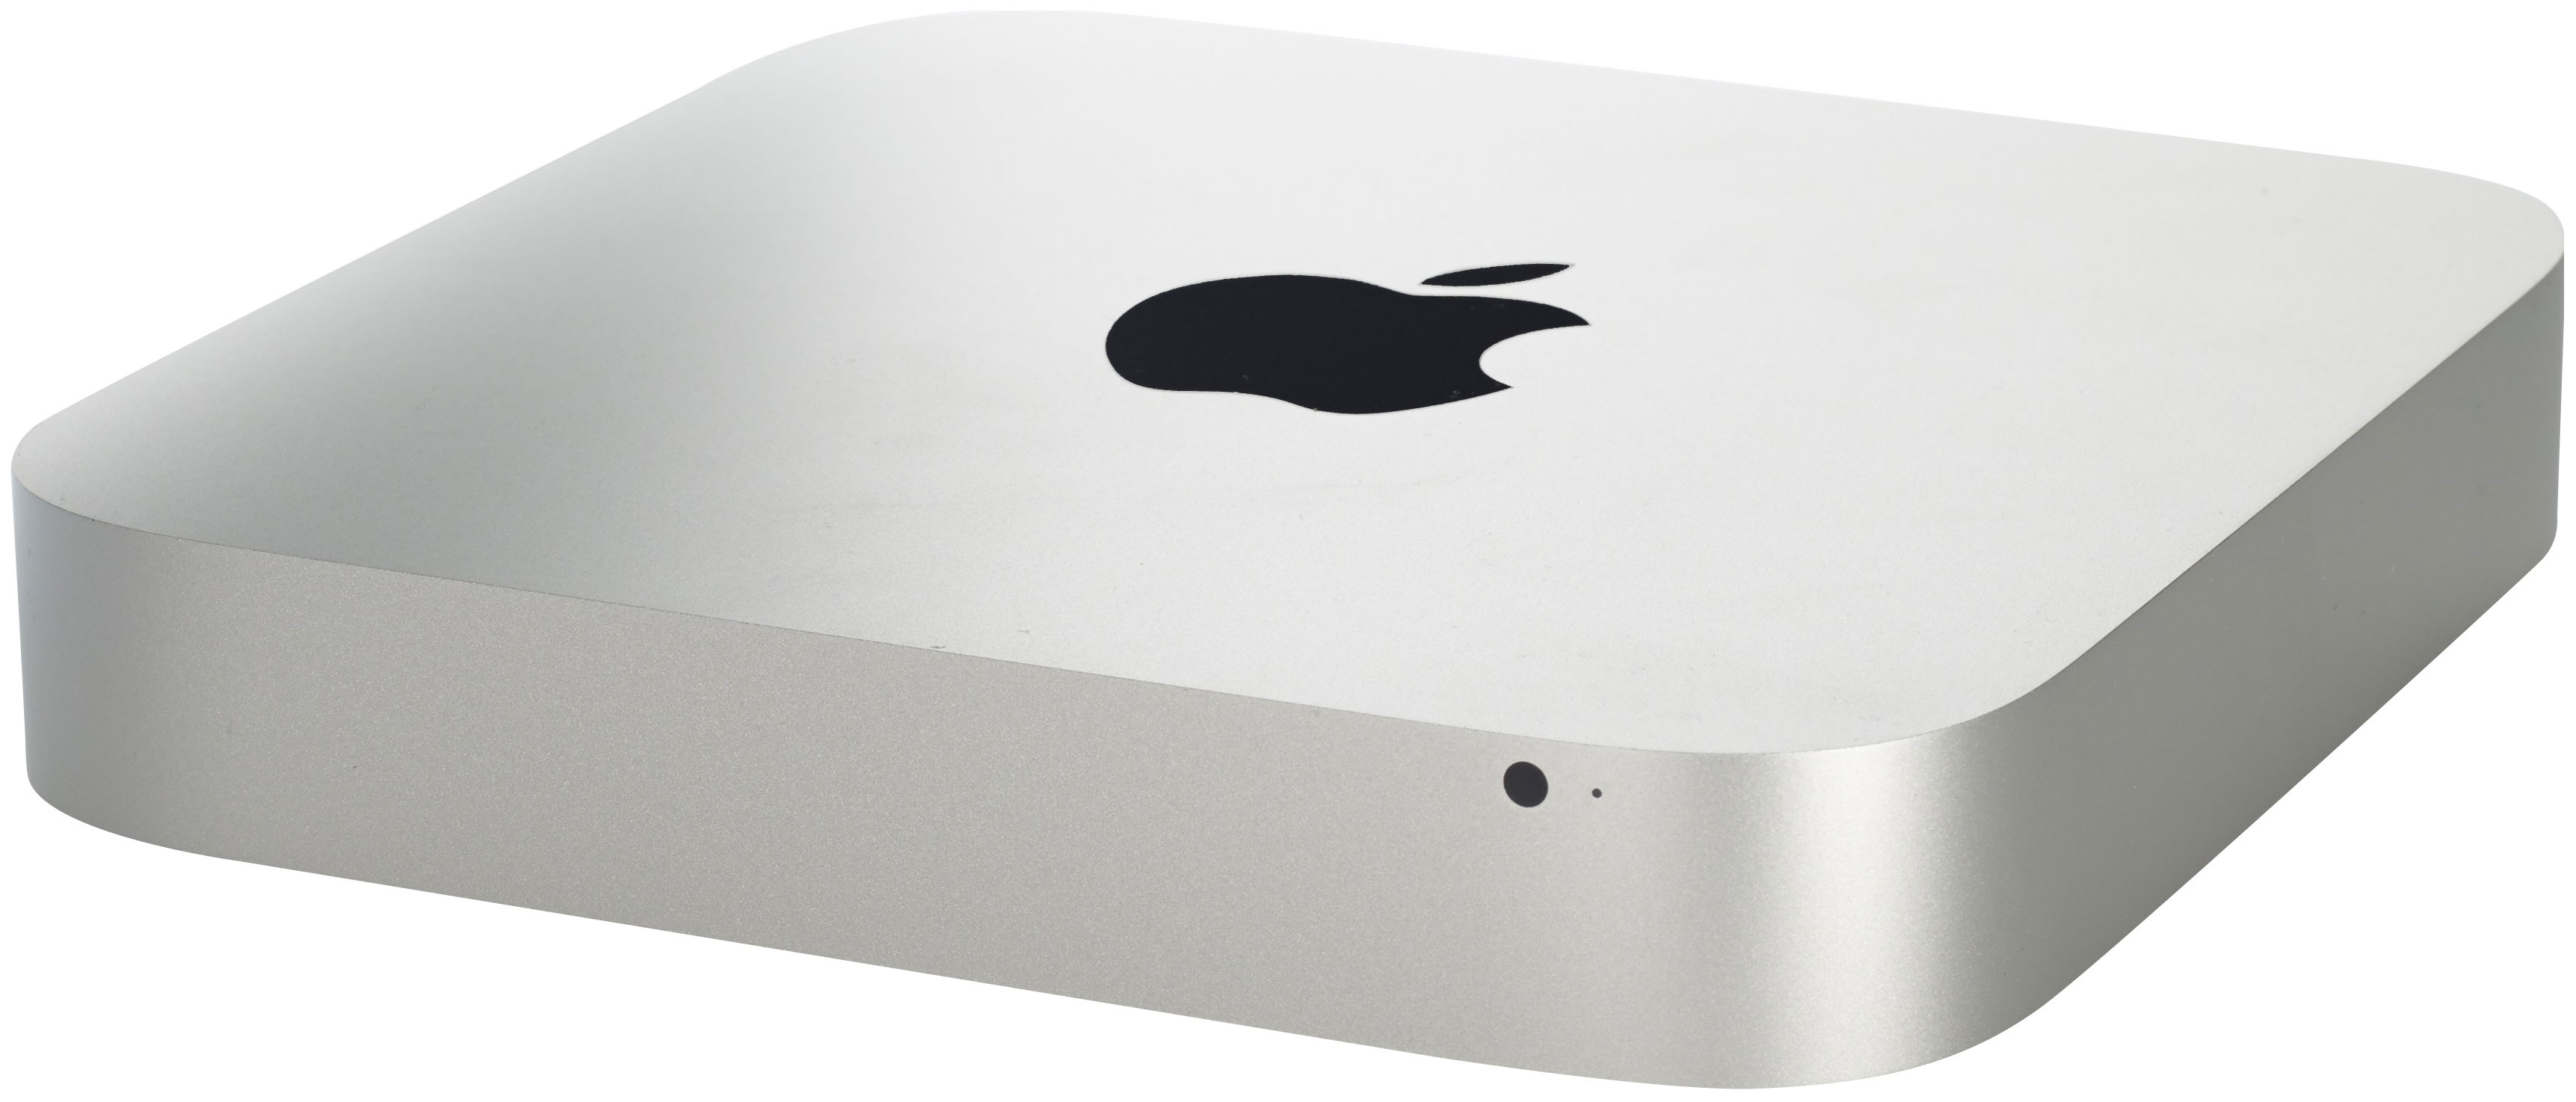 Апле мини. Apple Mac Mini m1, 16 GB, SSD 1 TB. Apple Mac Mini Core i5. Неттоп Apple Mac Mini. Mac Mini 2014 a1347.